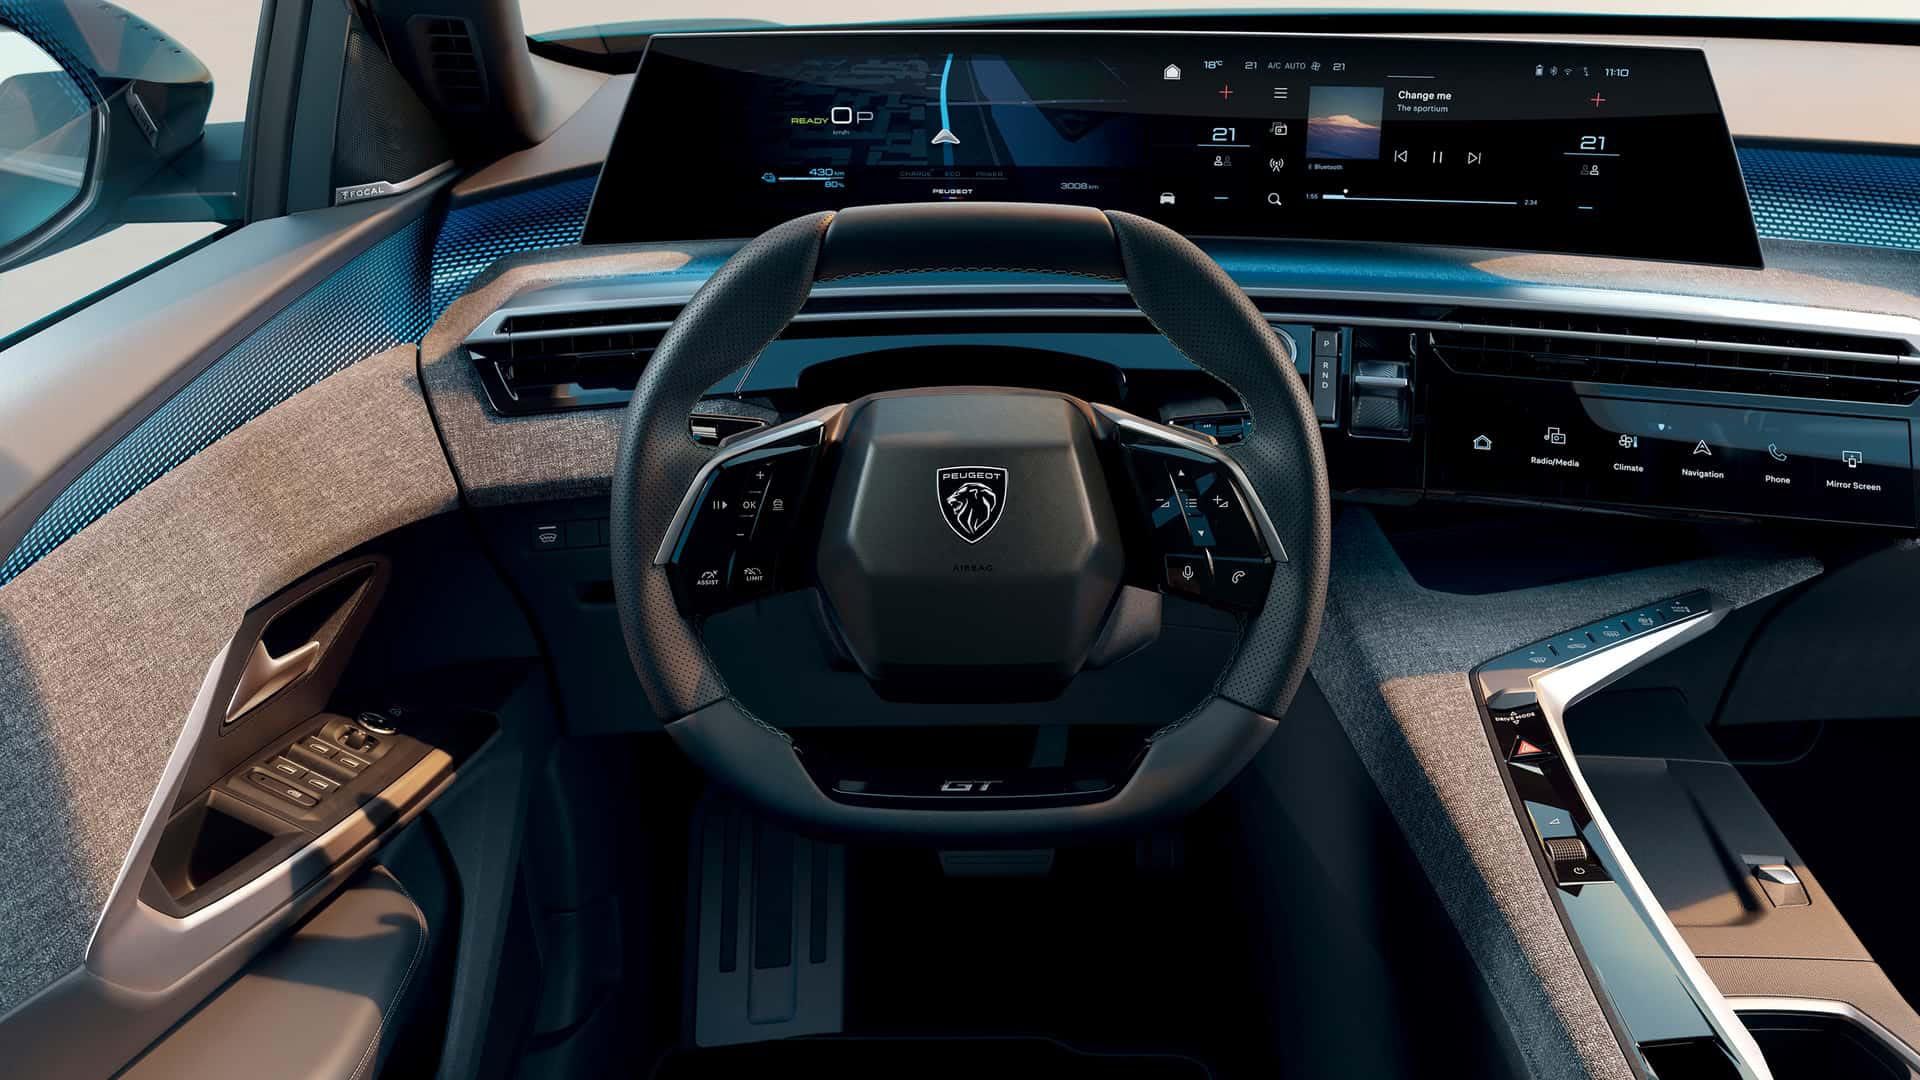 Futuro Peugeot 3008: la marca divulgó imágenes del nuevo i-Cockpit